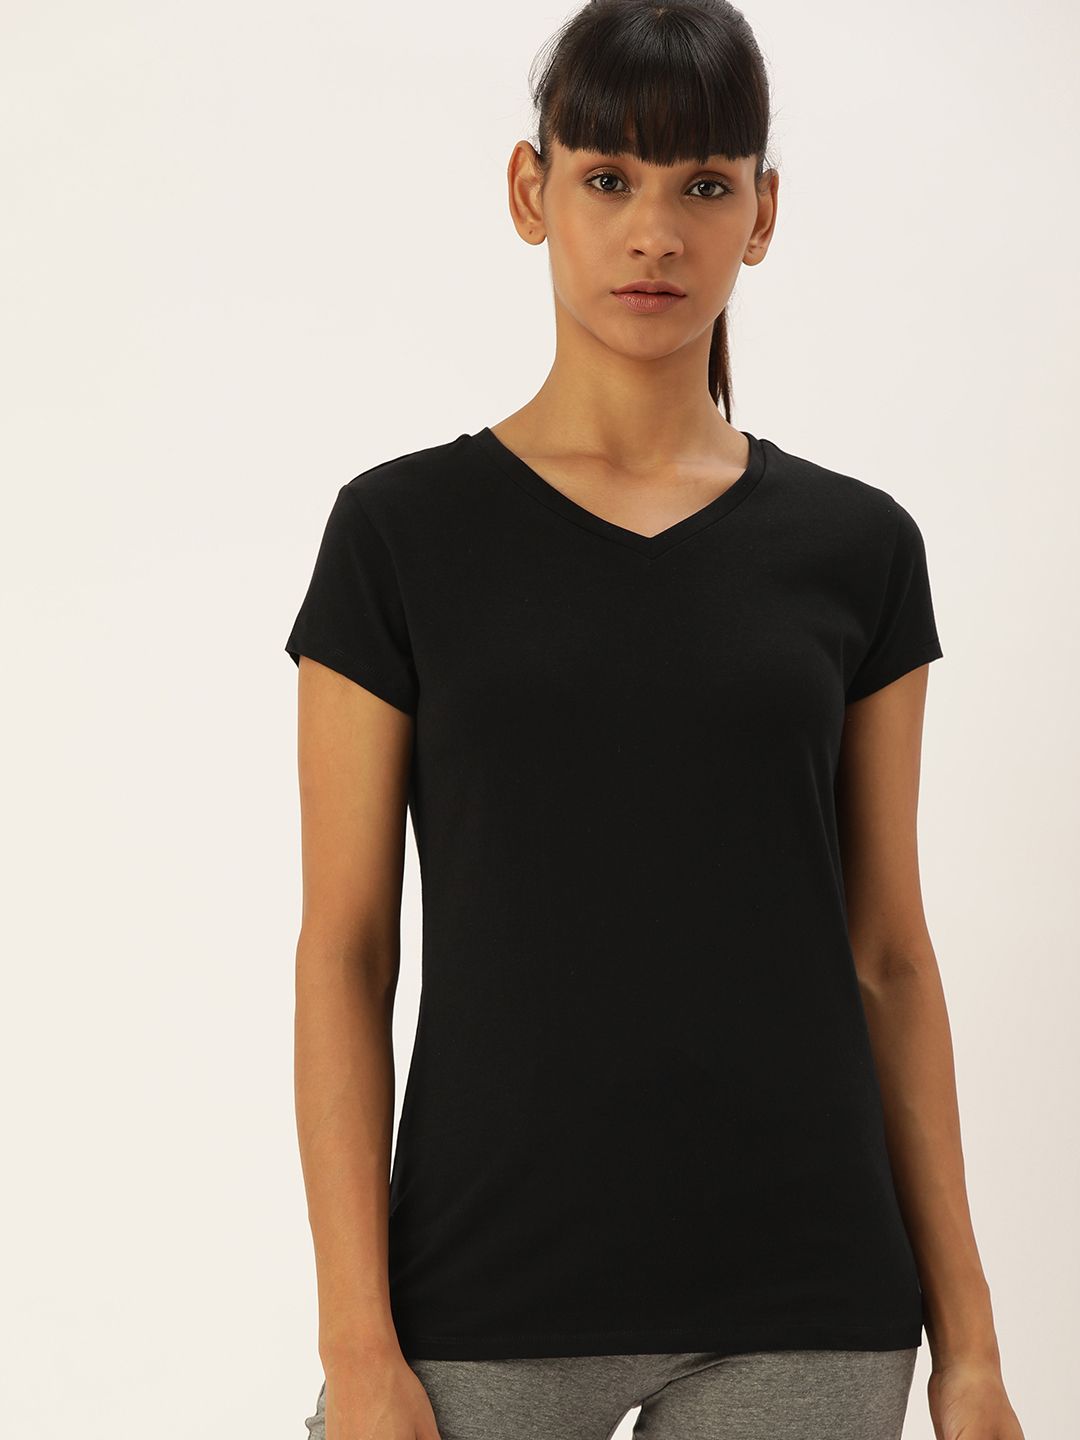 Enamor Women Black Slim Fit V Neck T-Shirt Price in India